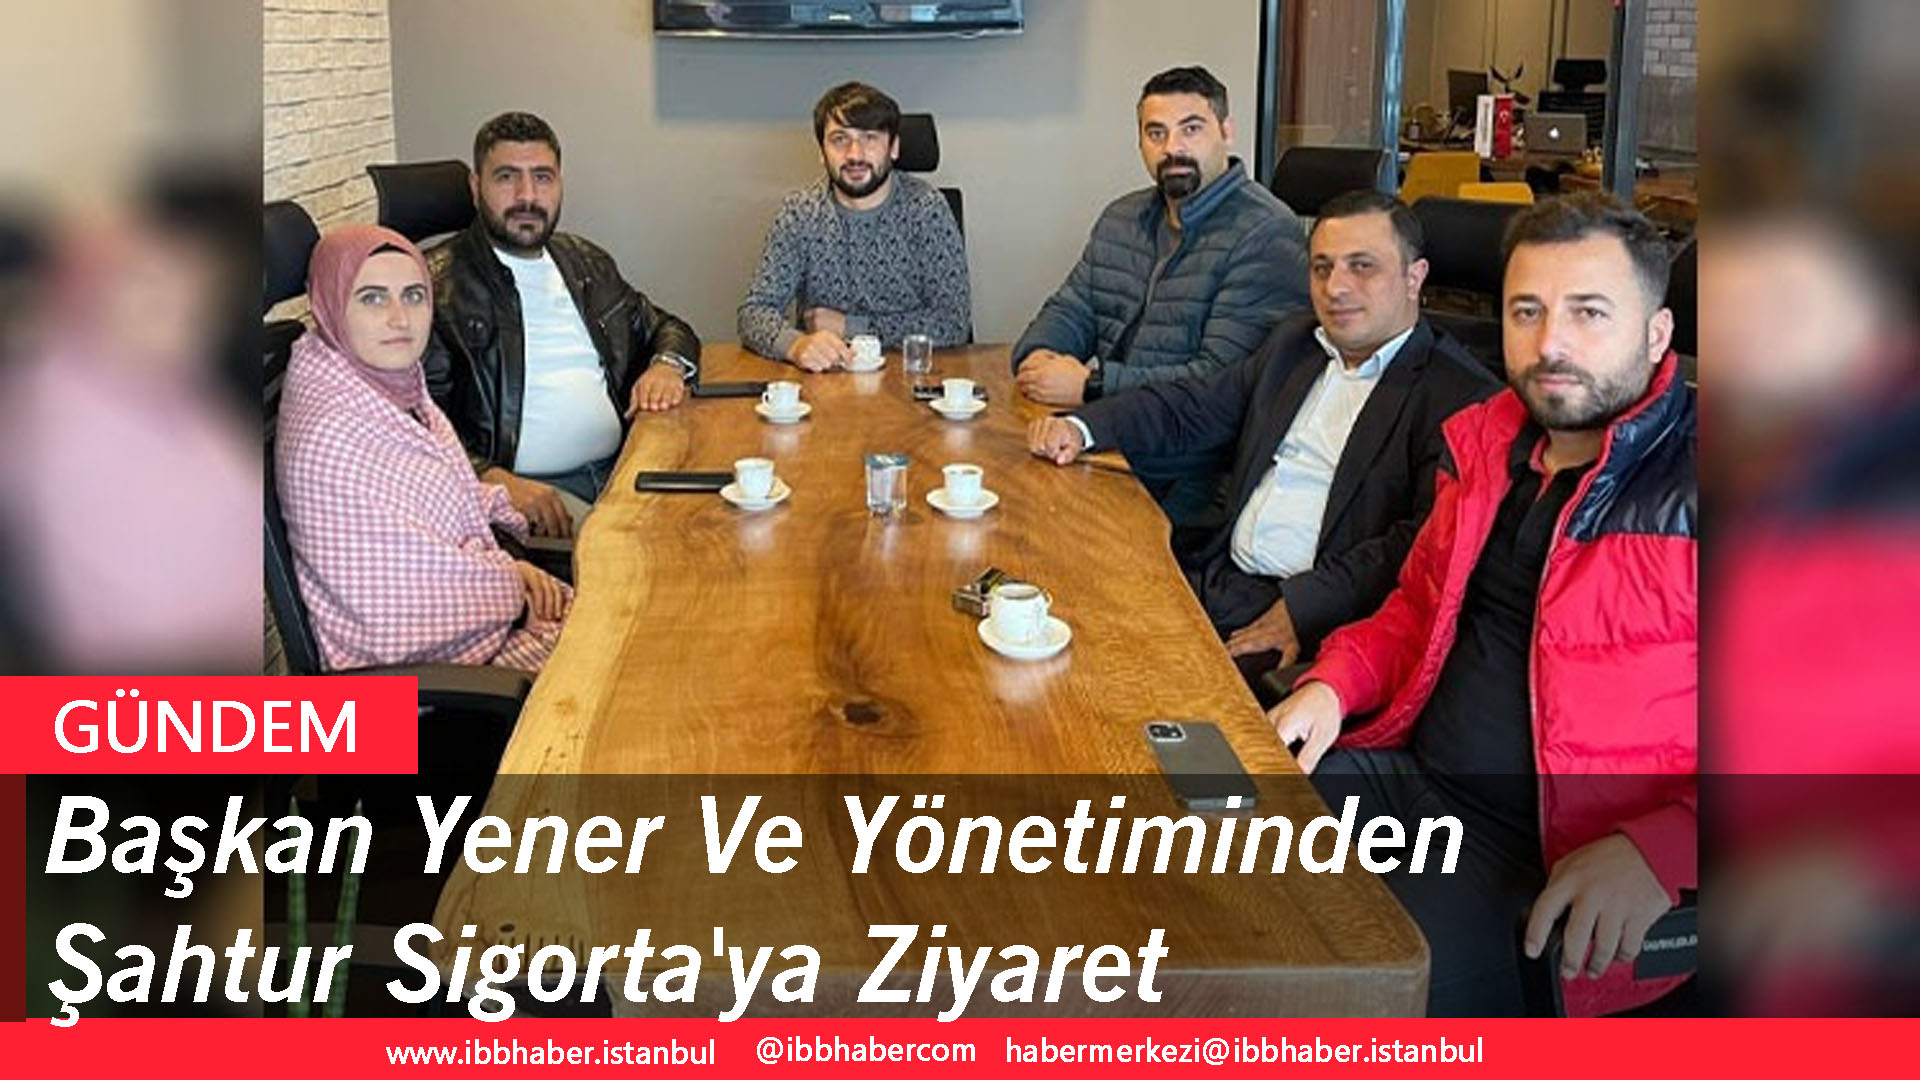 Başkan Yener Ve Yönetiminden, Şahtur Sigorta’ya Ziyaret